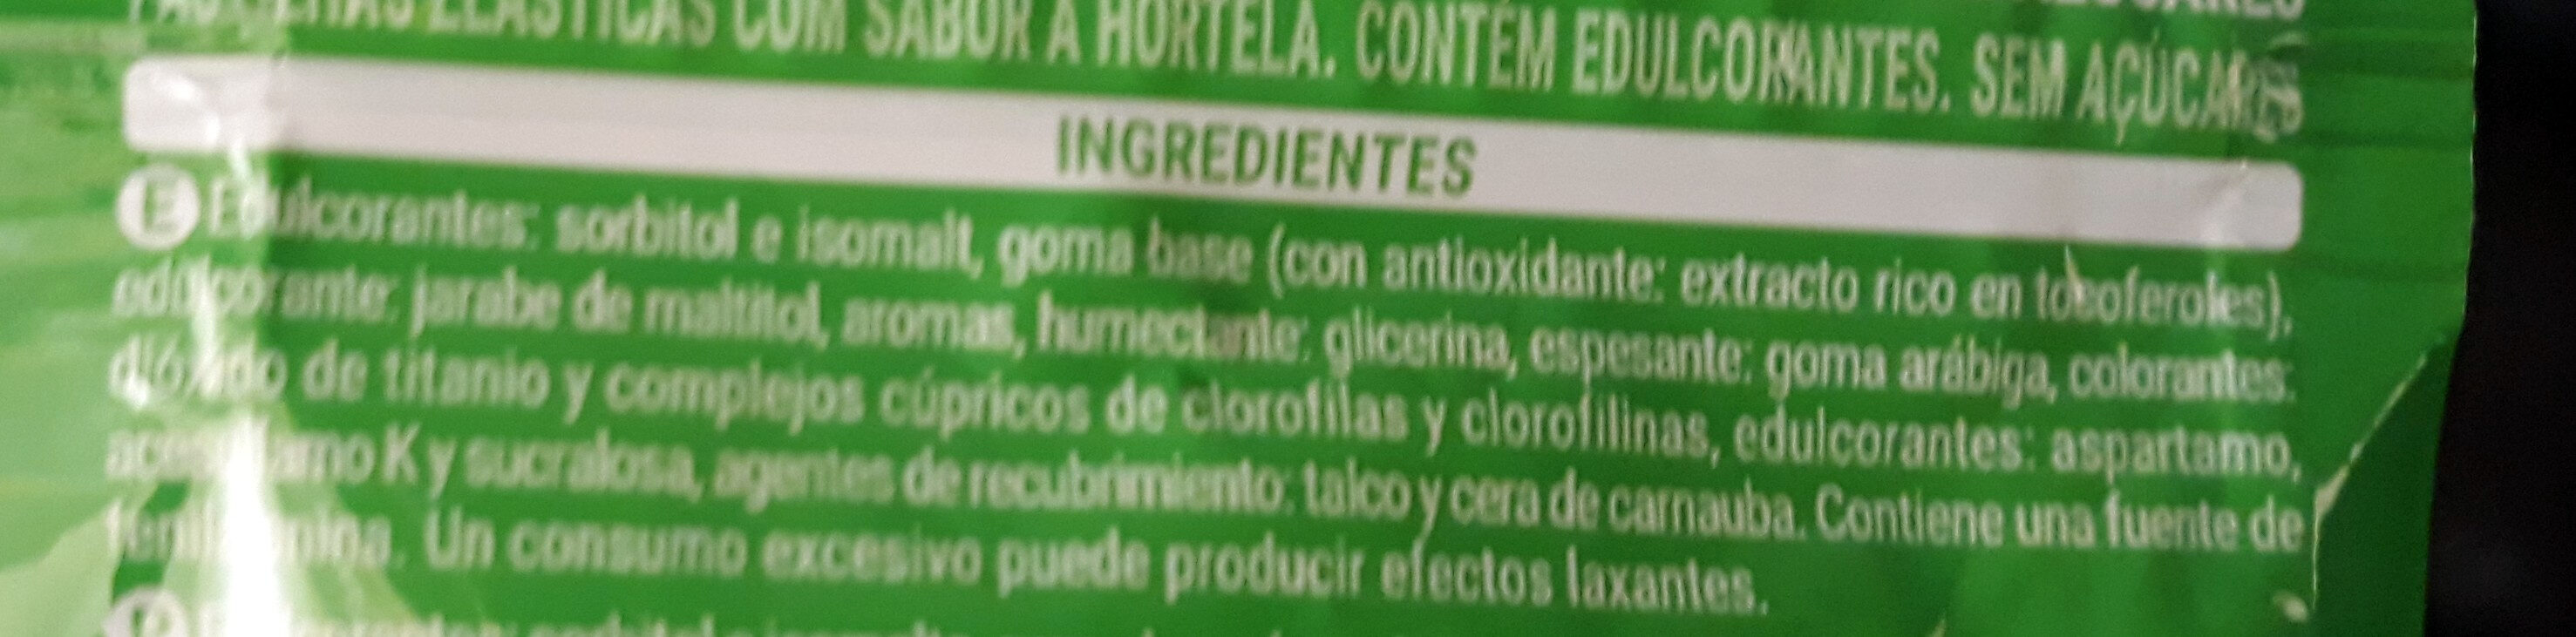 Chickles Hierbabuena - Ingredients - es